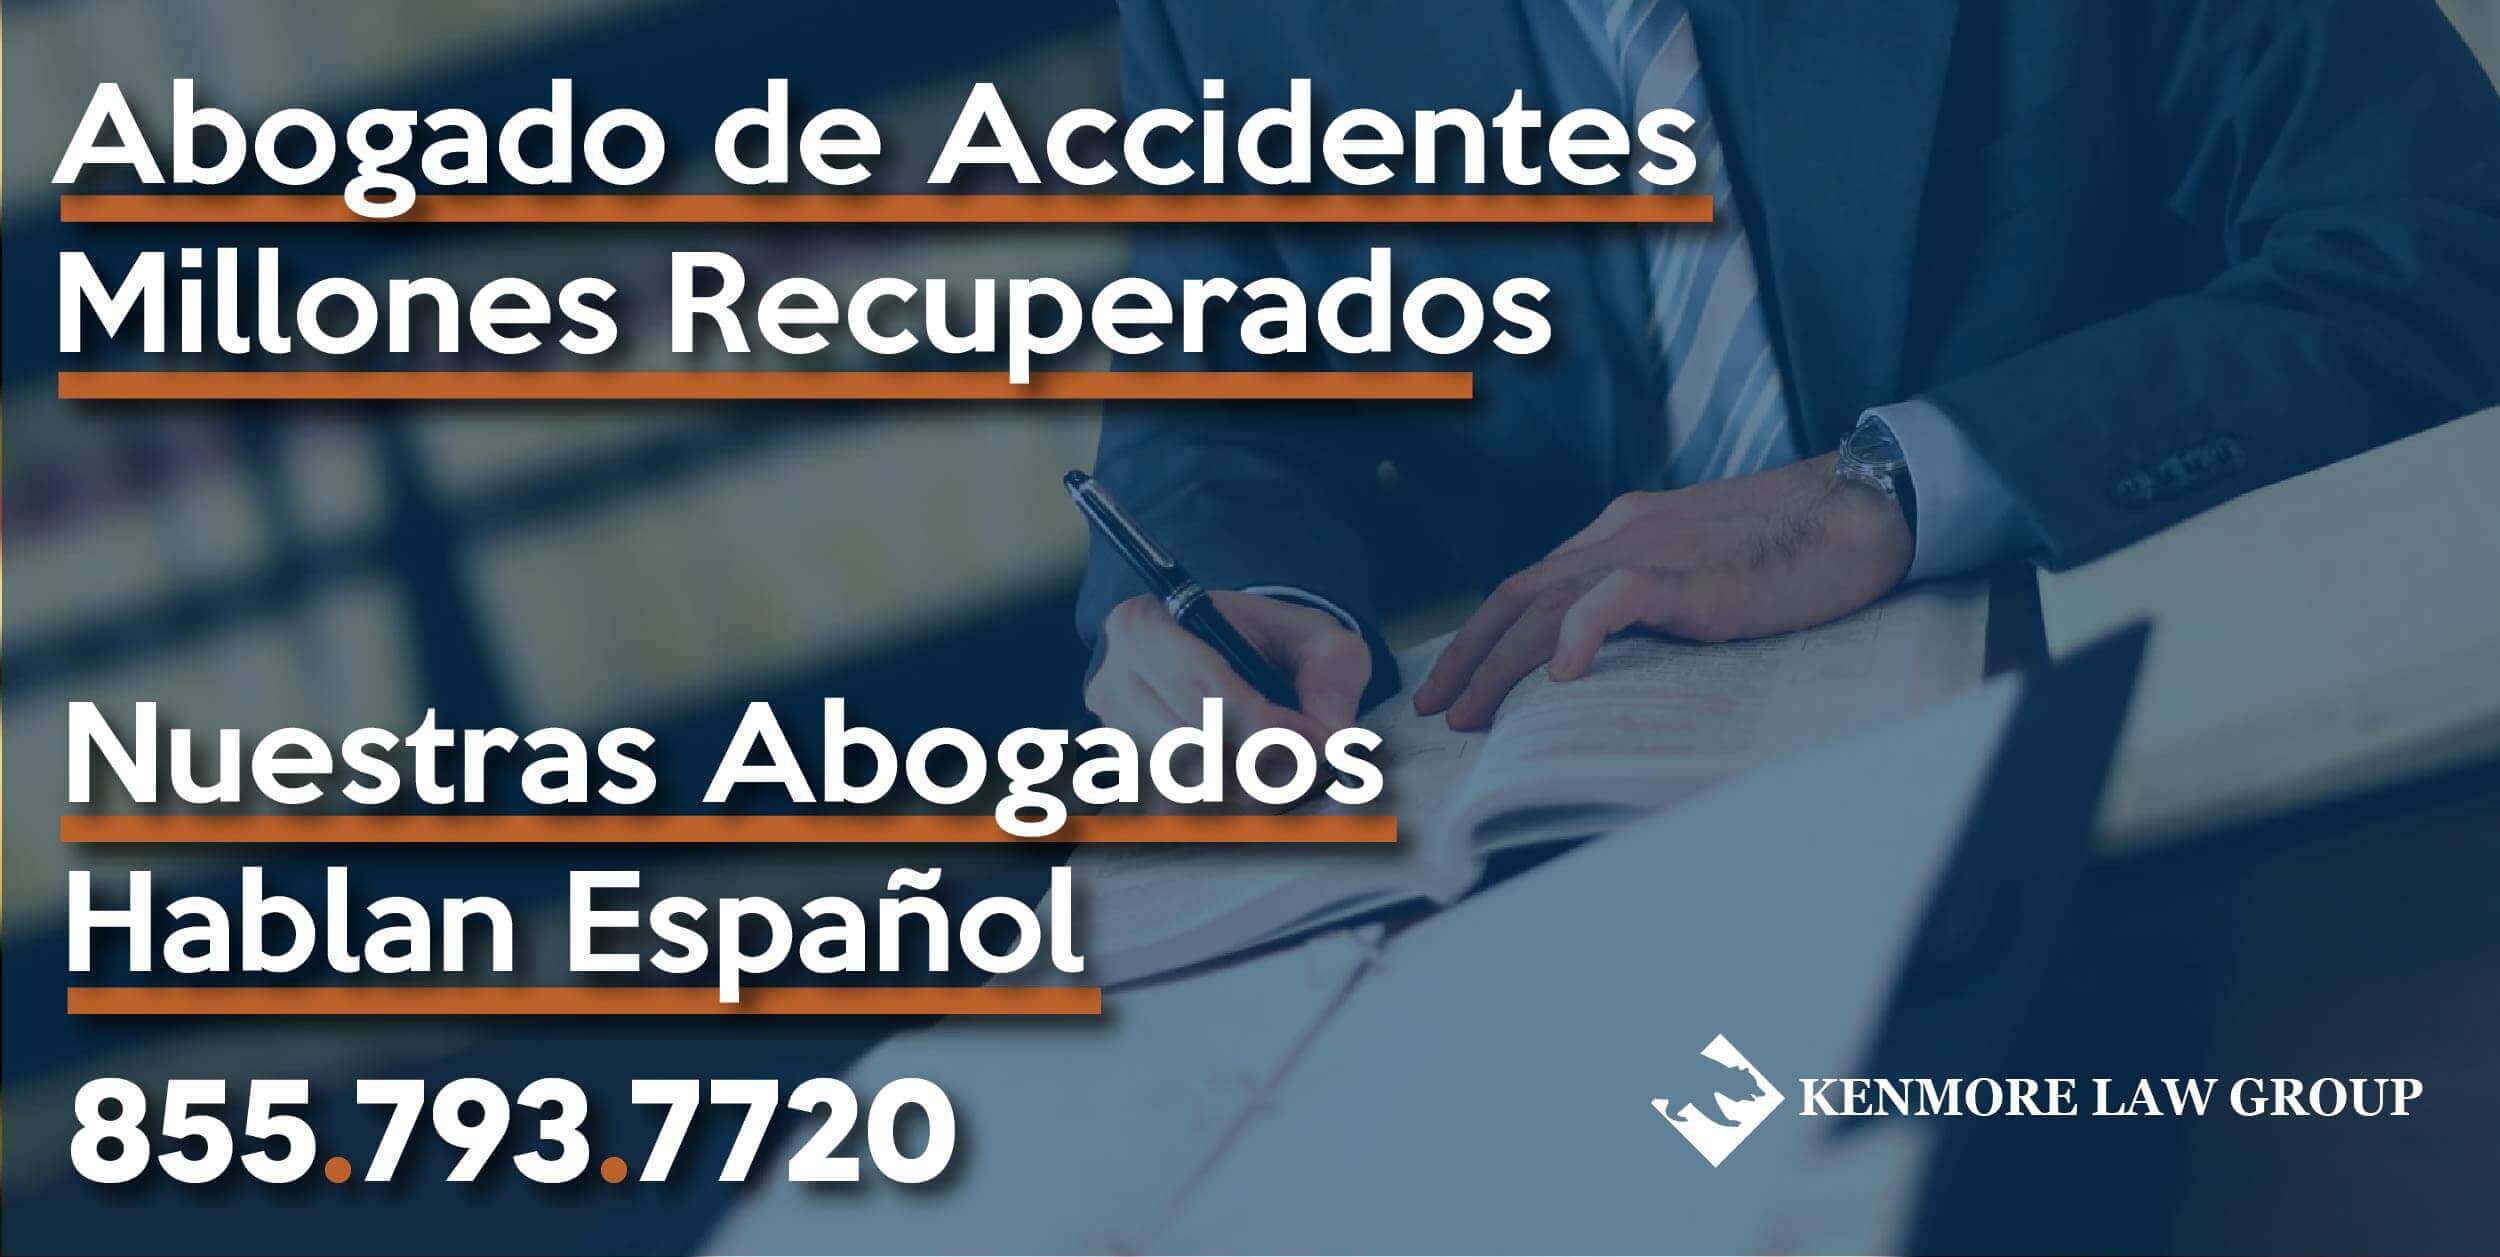 Abogado de Accidentes hablan espanol